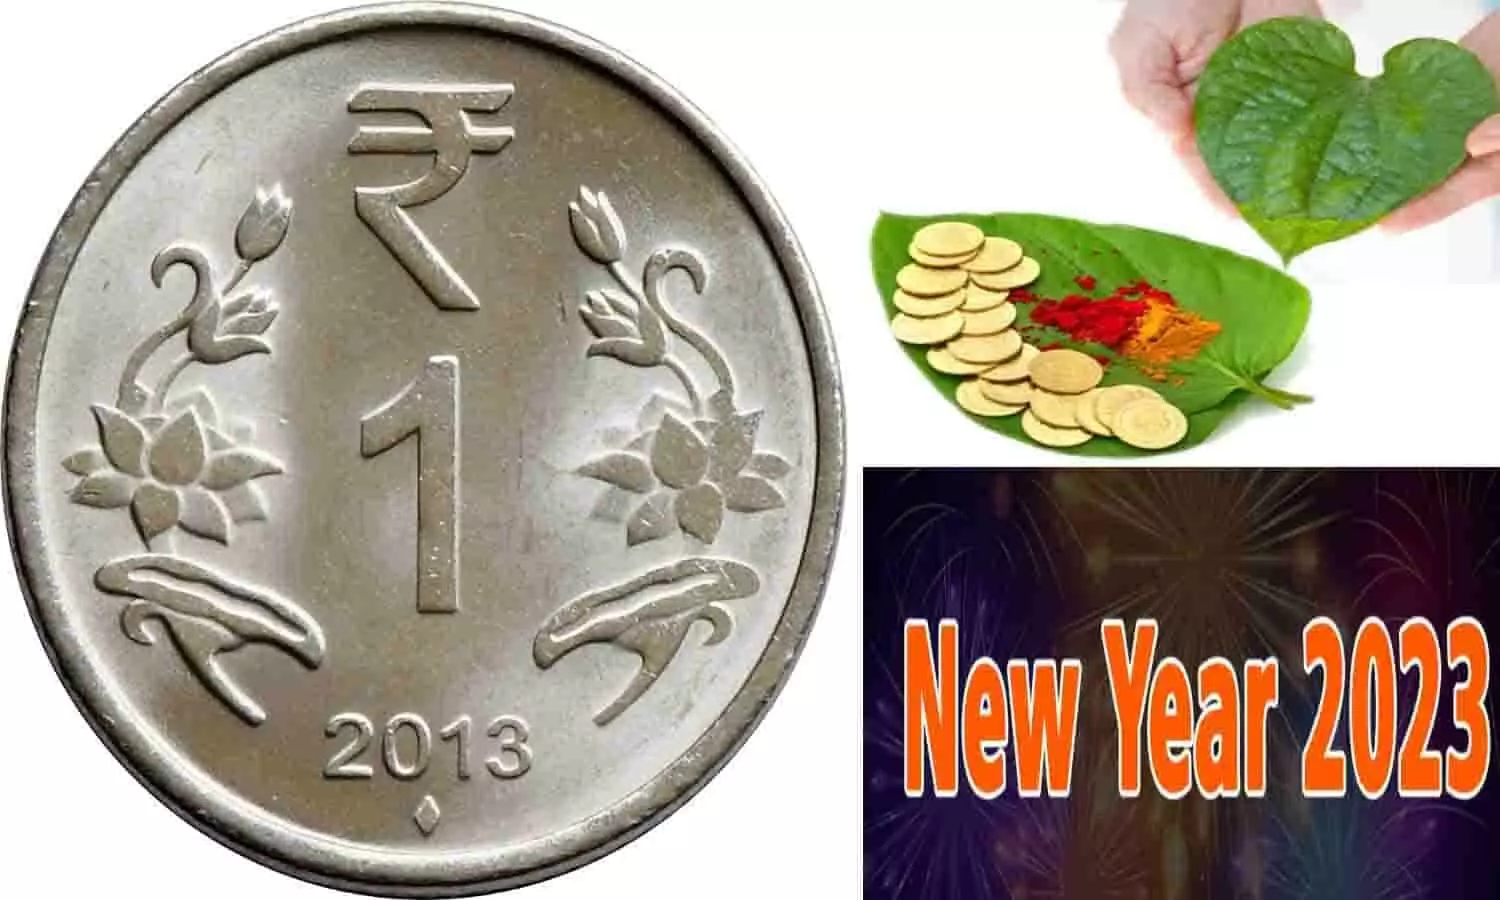 New Year Totka 2023: नए साल के एक दिन पहले 1 रूपए के सिक्के से करे ऐसे टोटका, सालभर होगी पैसो की बारिश, बनेगे अरबो-खरबो के मालिक